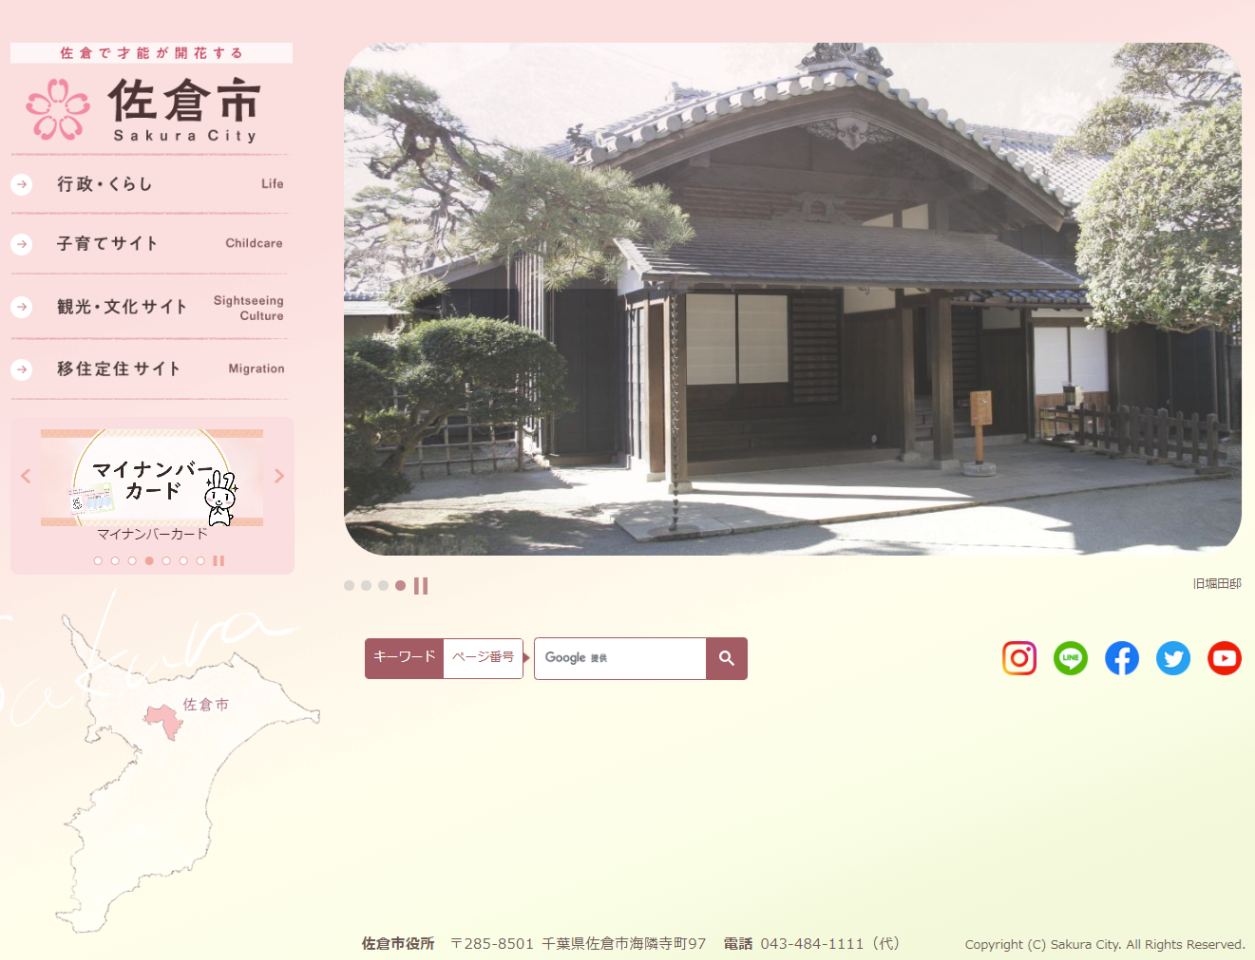 成田市で古いスマホの買取をしてくれるショップや、スマホの宅配買取サービス